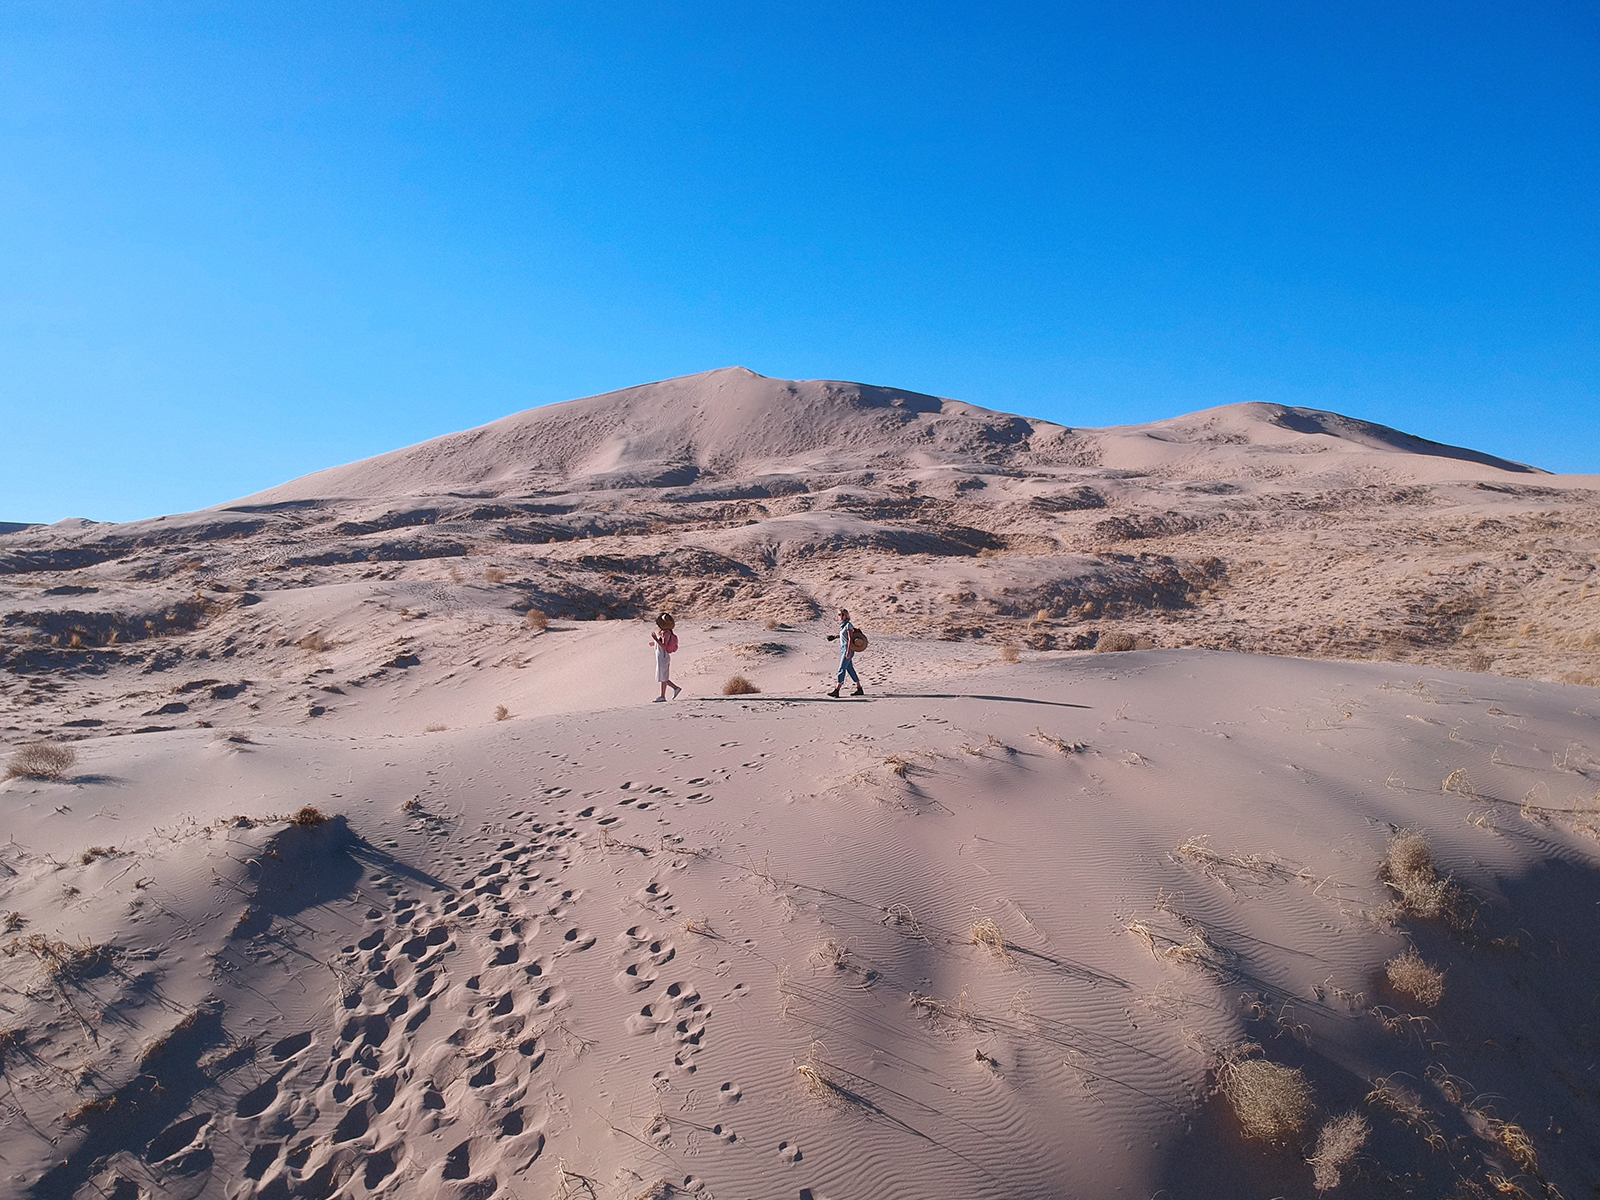 Two people walking across sand dunes in Califorrnia.